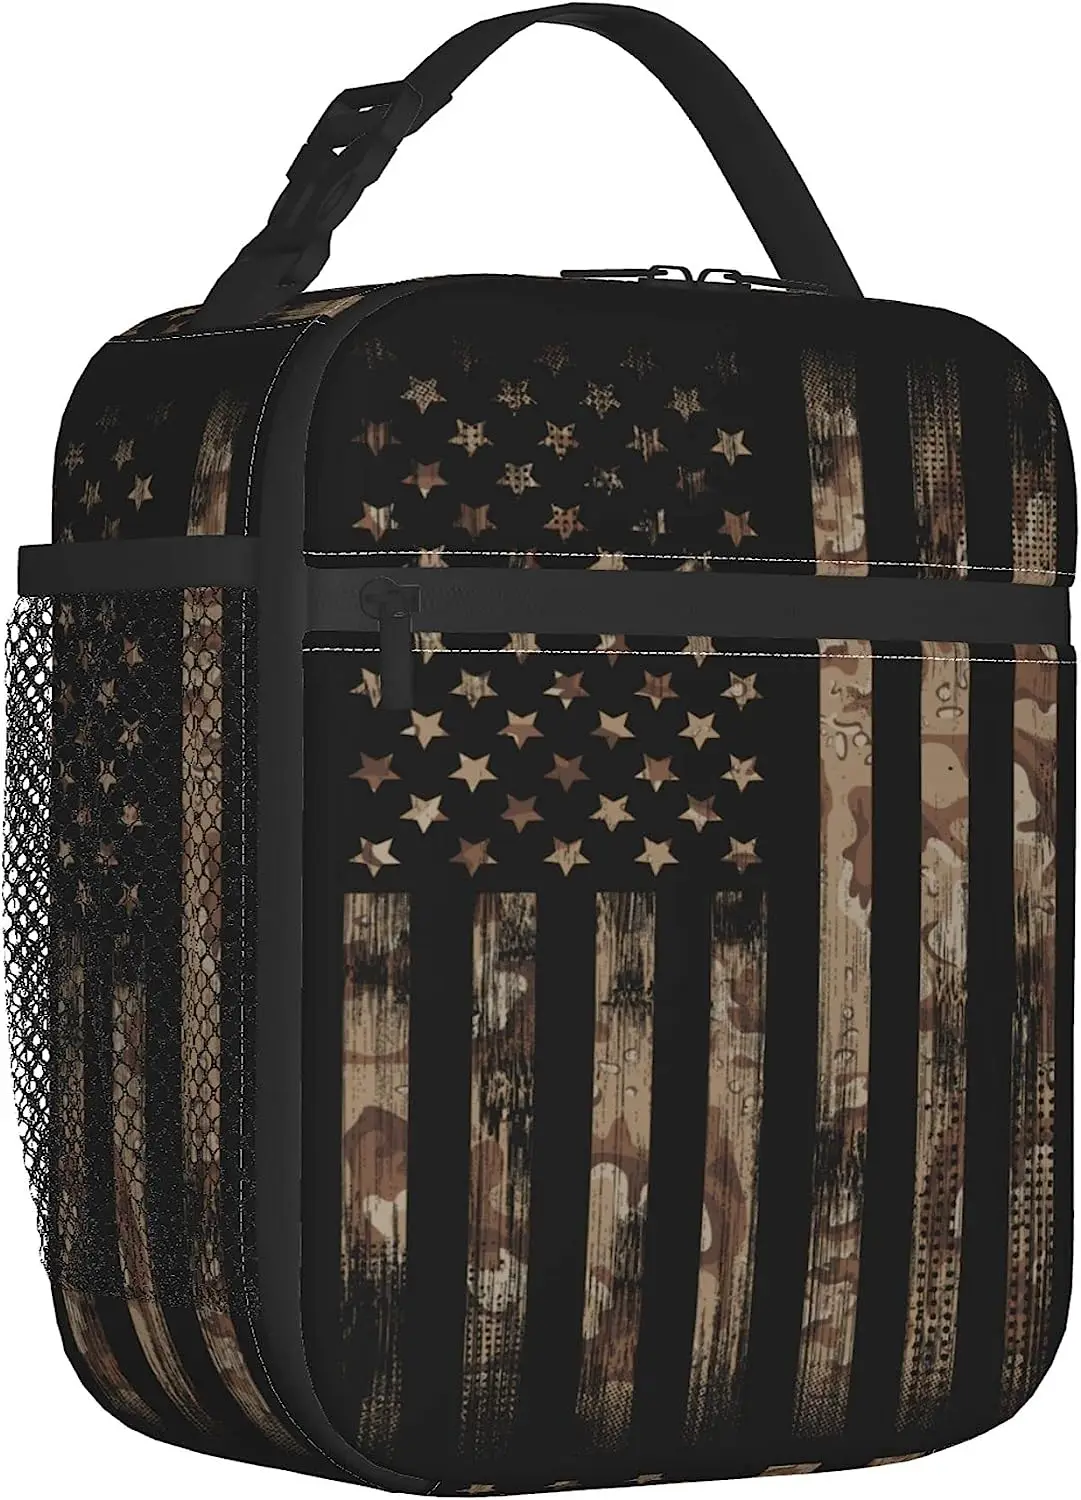 

Камуфляжная сумка для ланча с американским флагом для школы, работы, пикника, многоразовый портативный изолированный охлаждающий Ланч-бокс для мужчин, женщин, детей